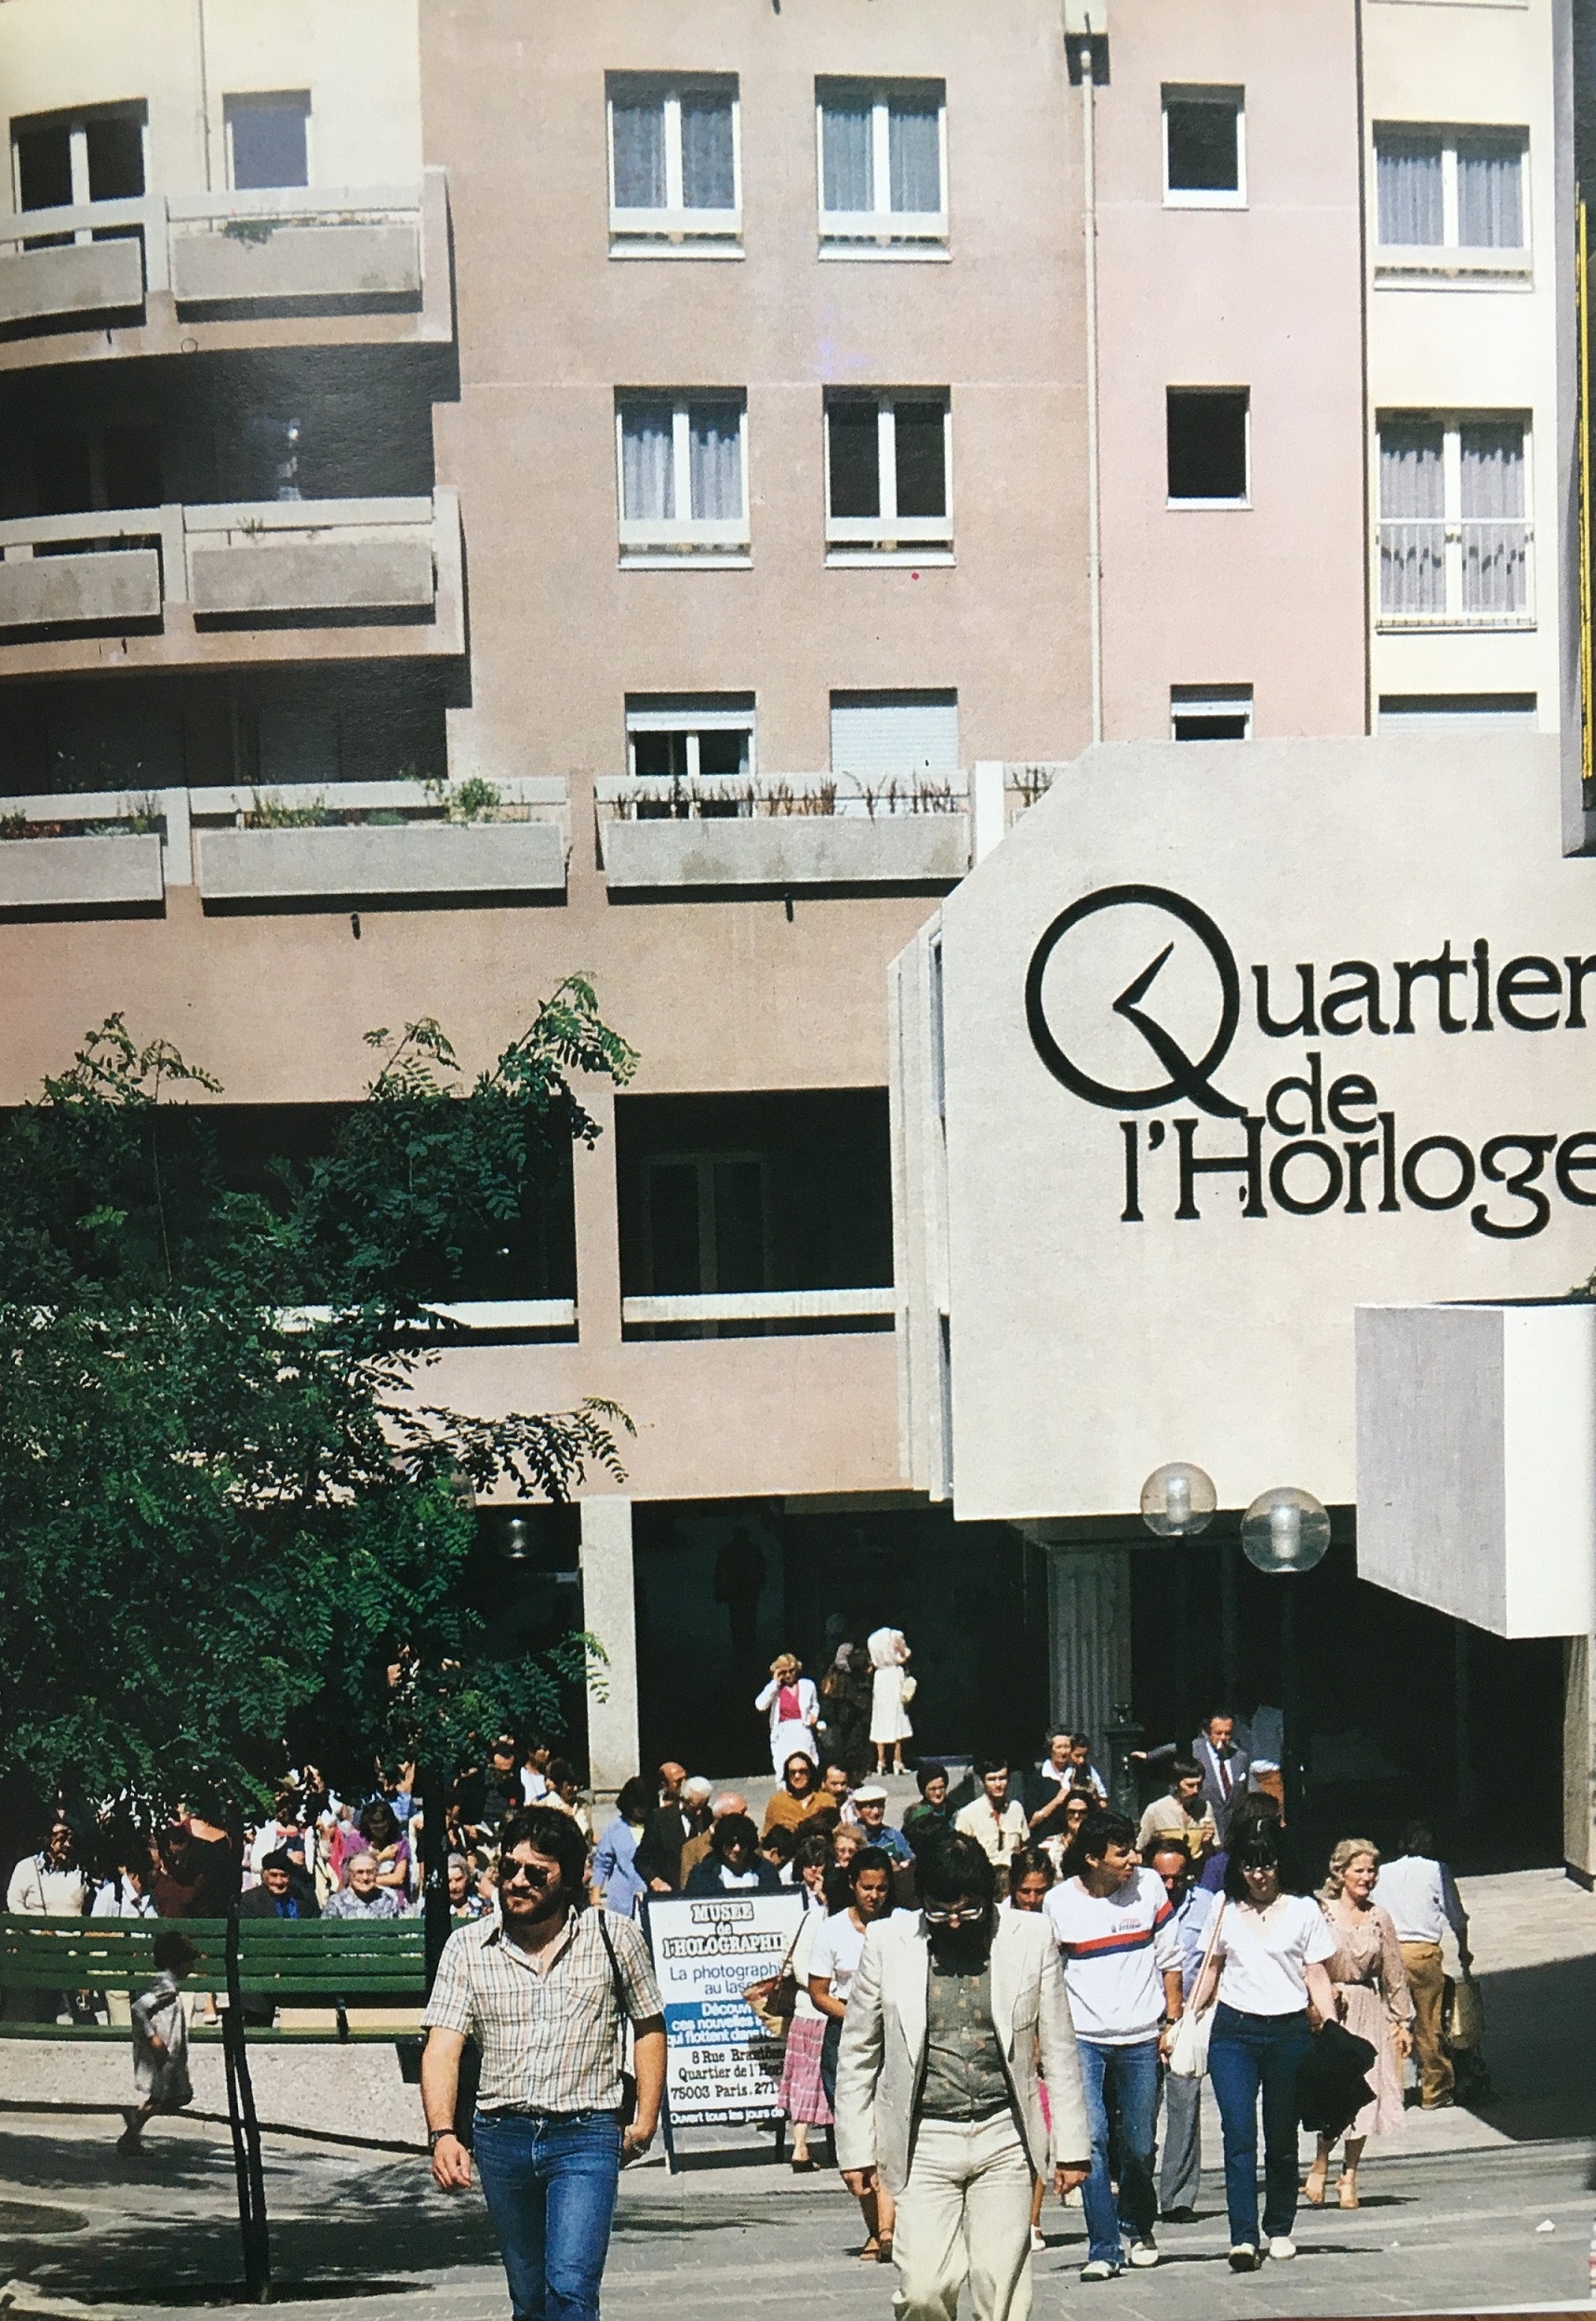 Le Quartier de l'Horloge, fin des années 80 in Les Halles, La renaissance d'un quartier 1966-1988, Christian Michel.